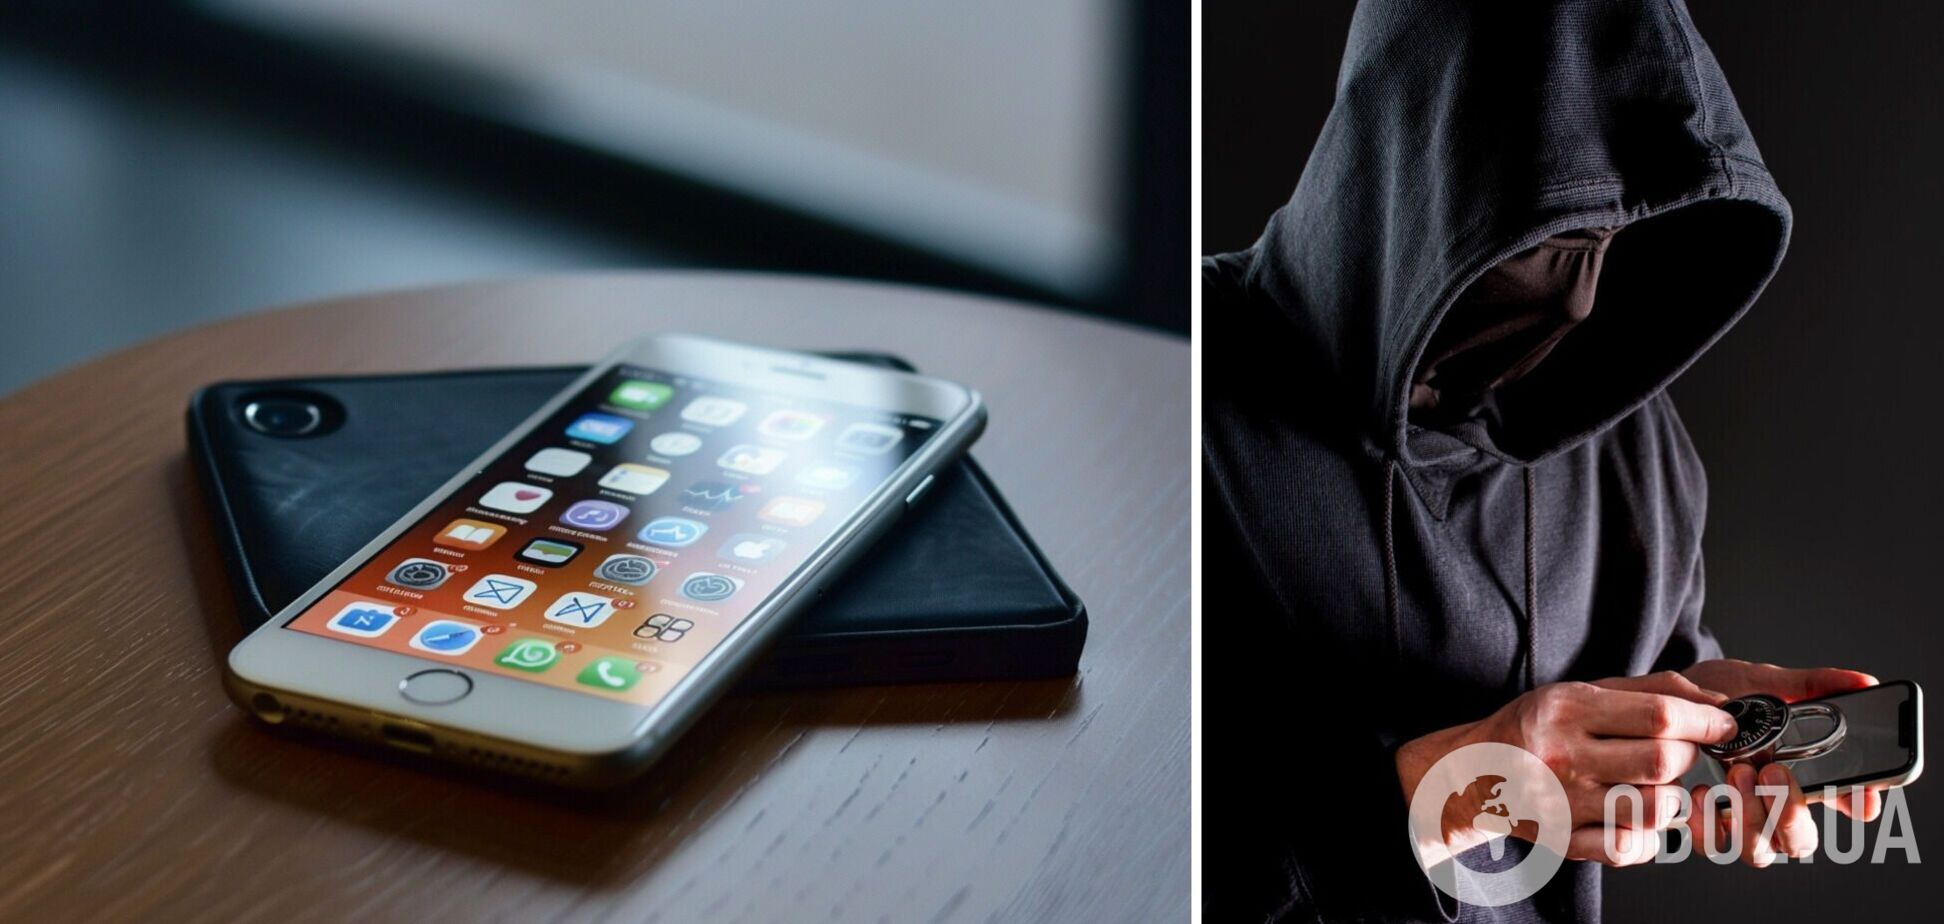 Як захистити iPhone від злодіїв: три простих трюки